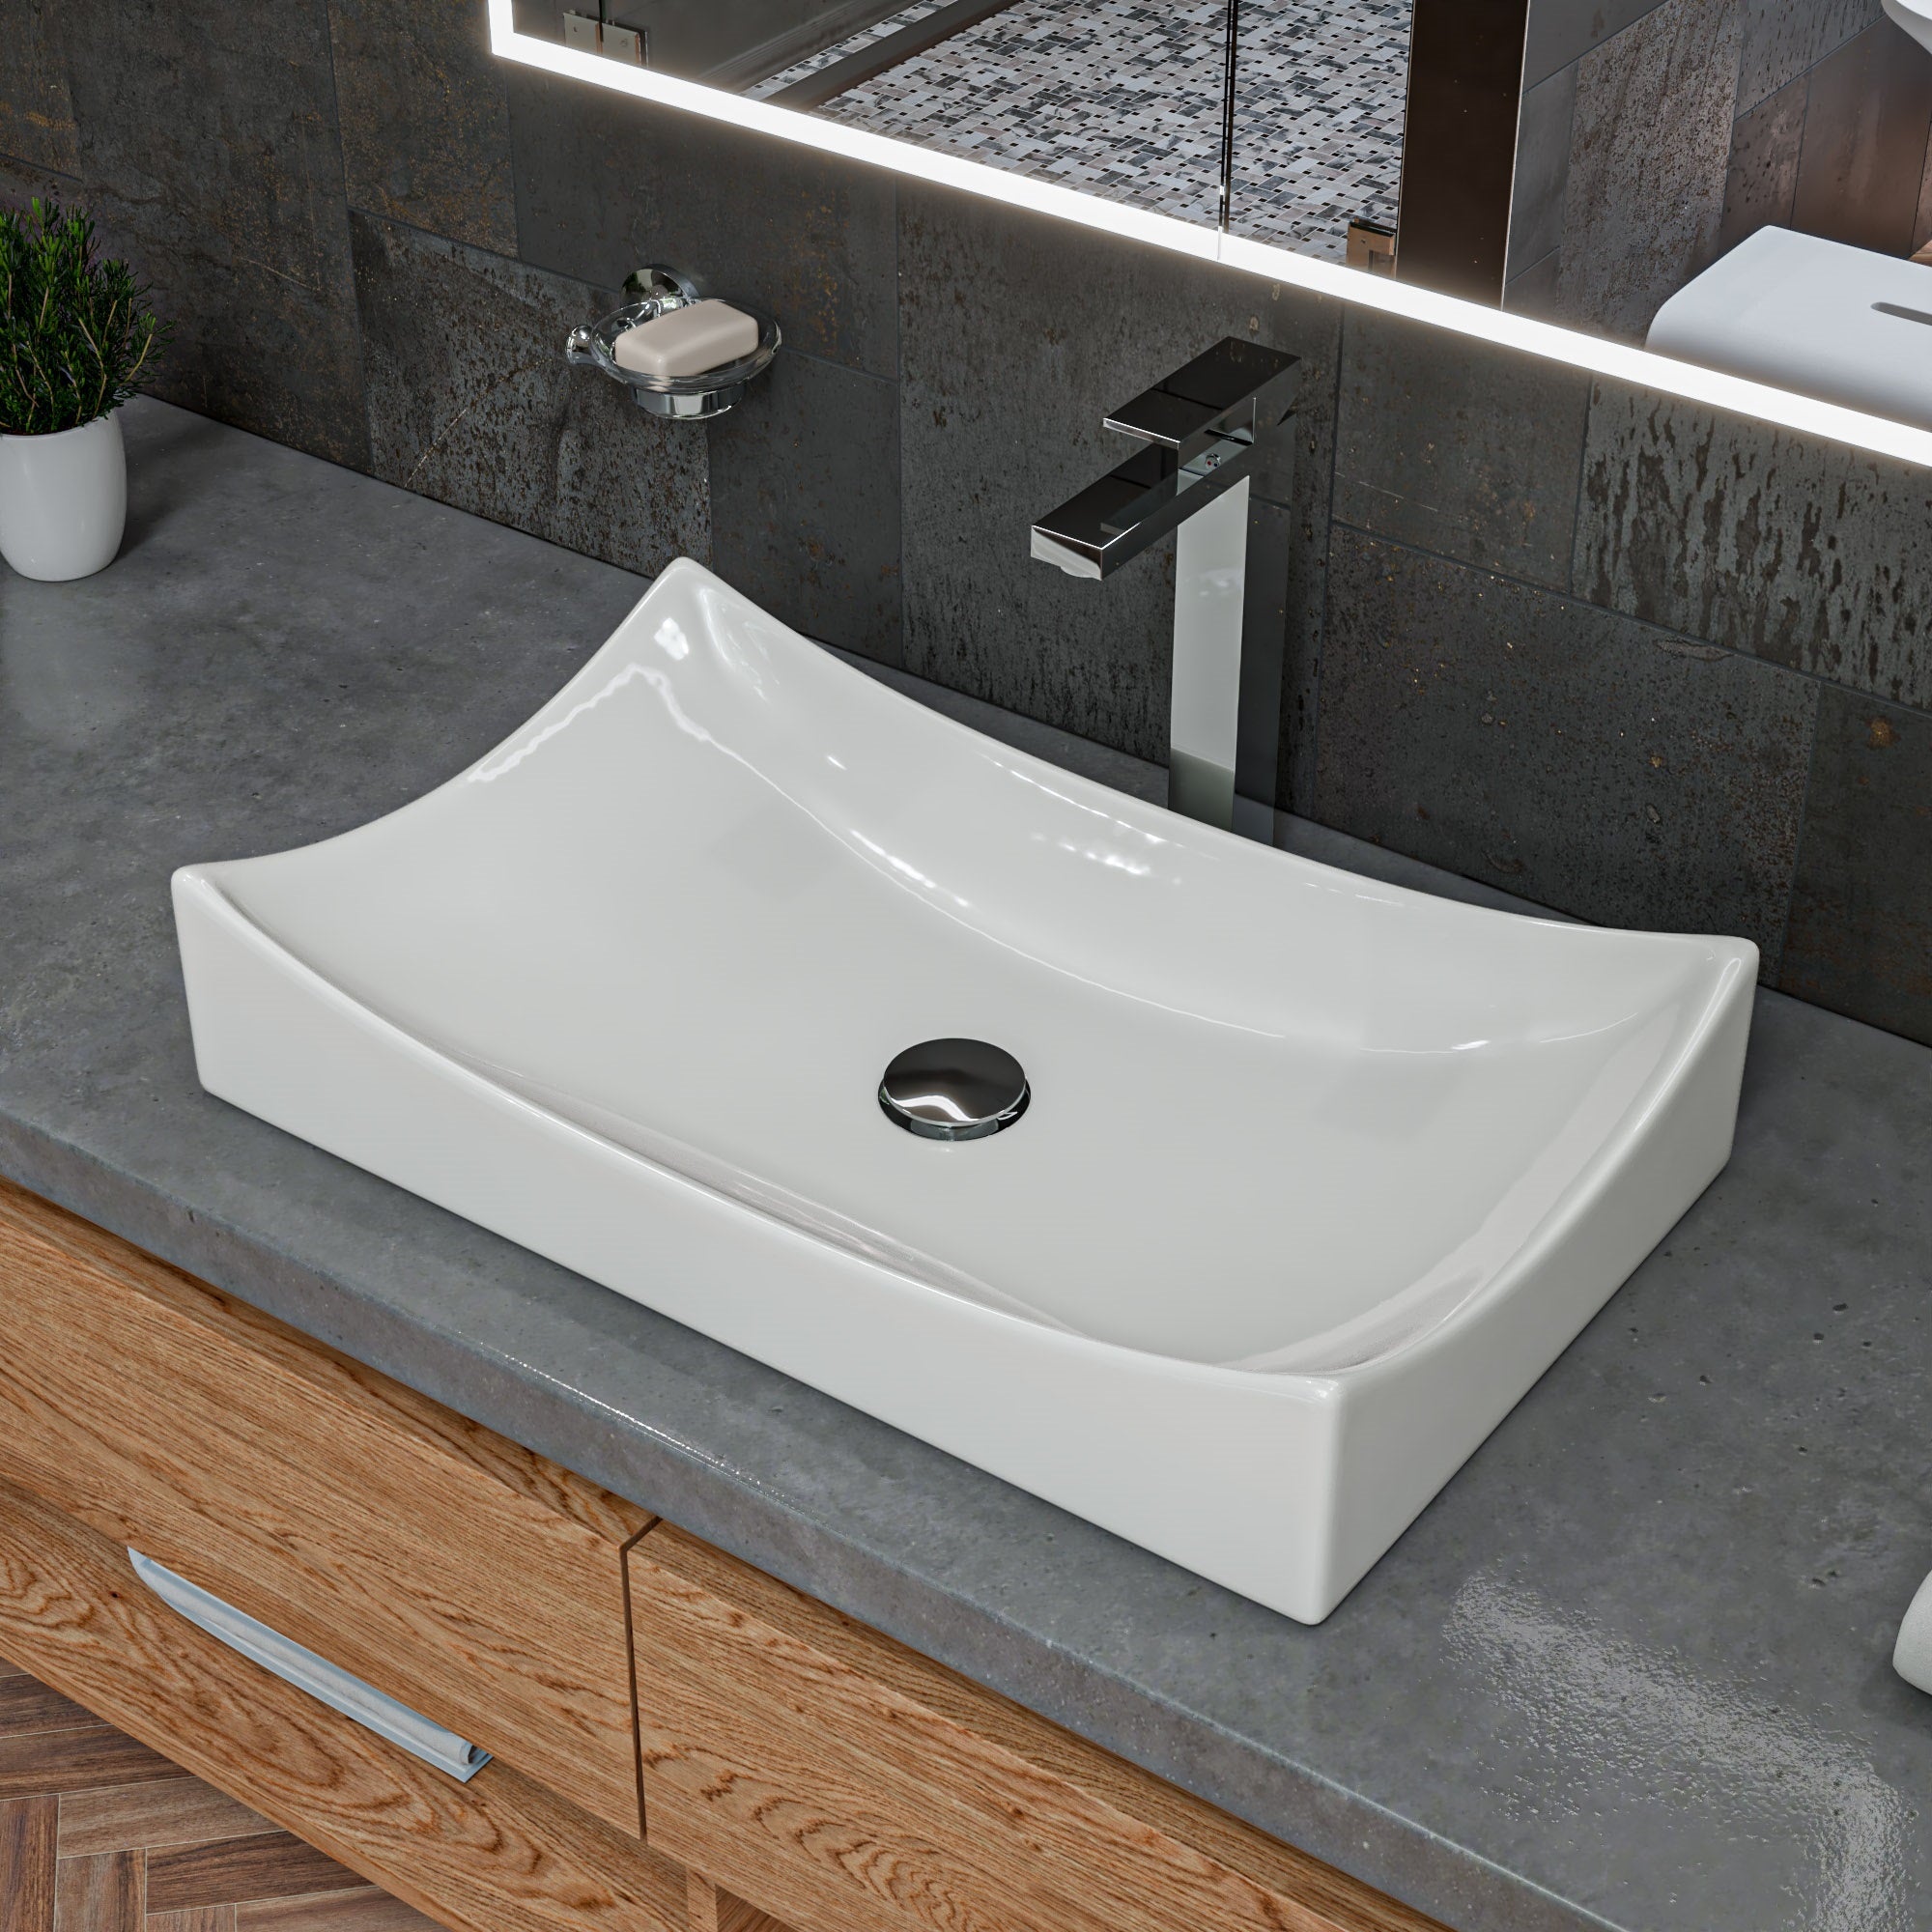 ALFI brand AB1129-PC Polished Chrome Tall Square Single Lever Bathroom Faucet